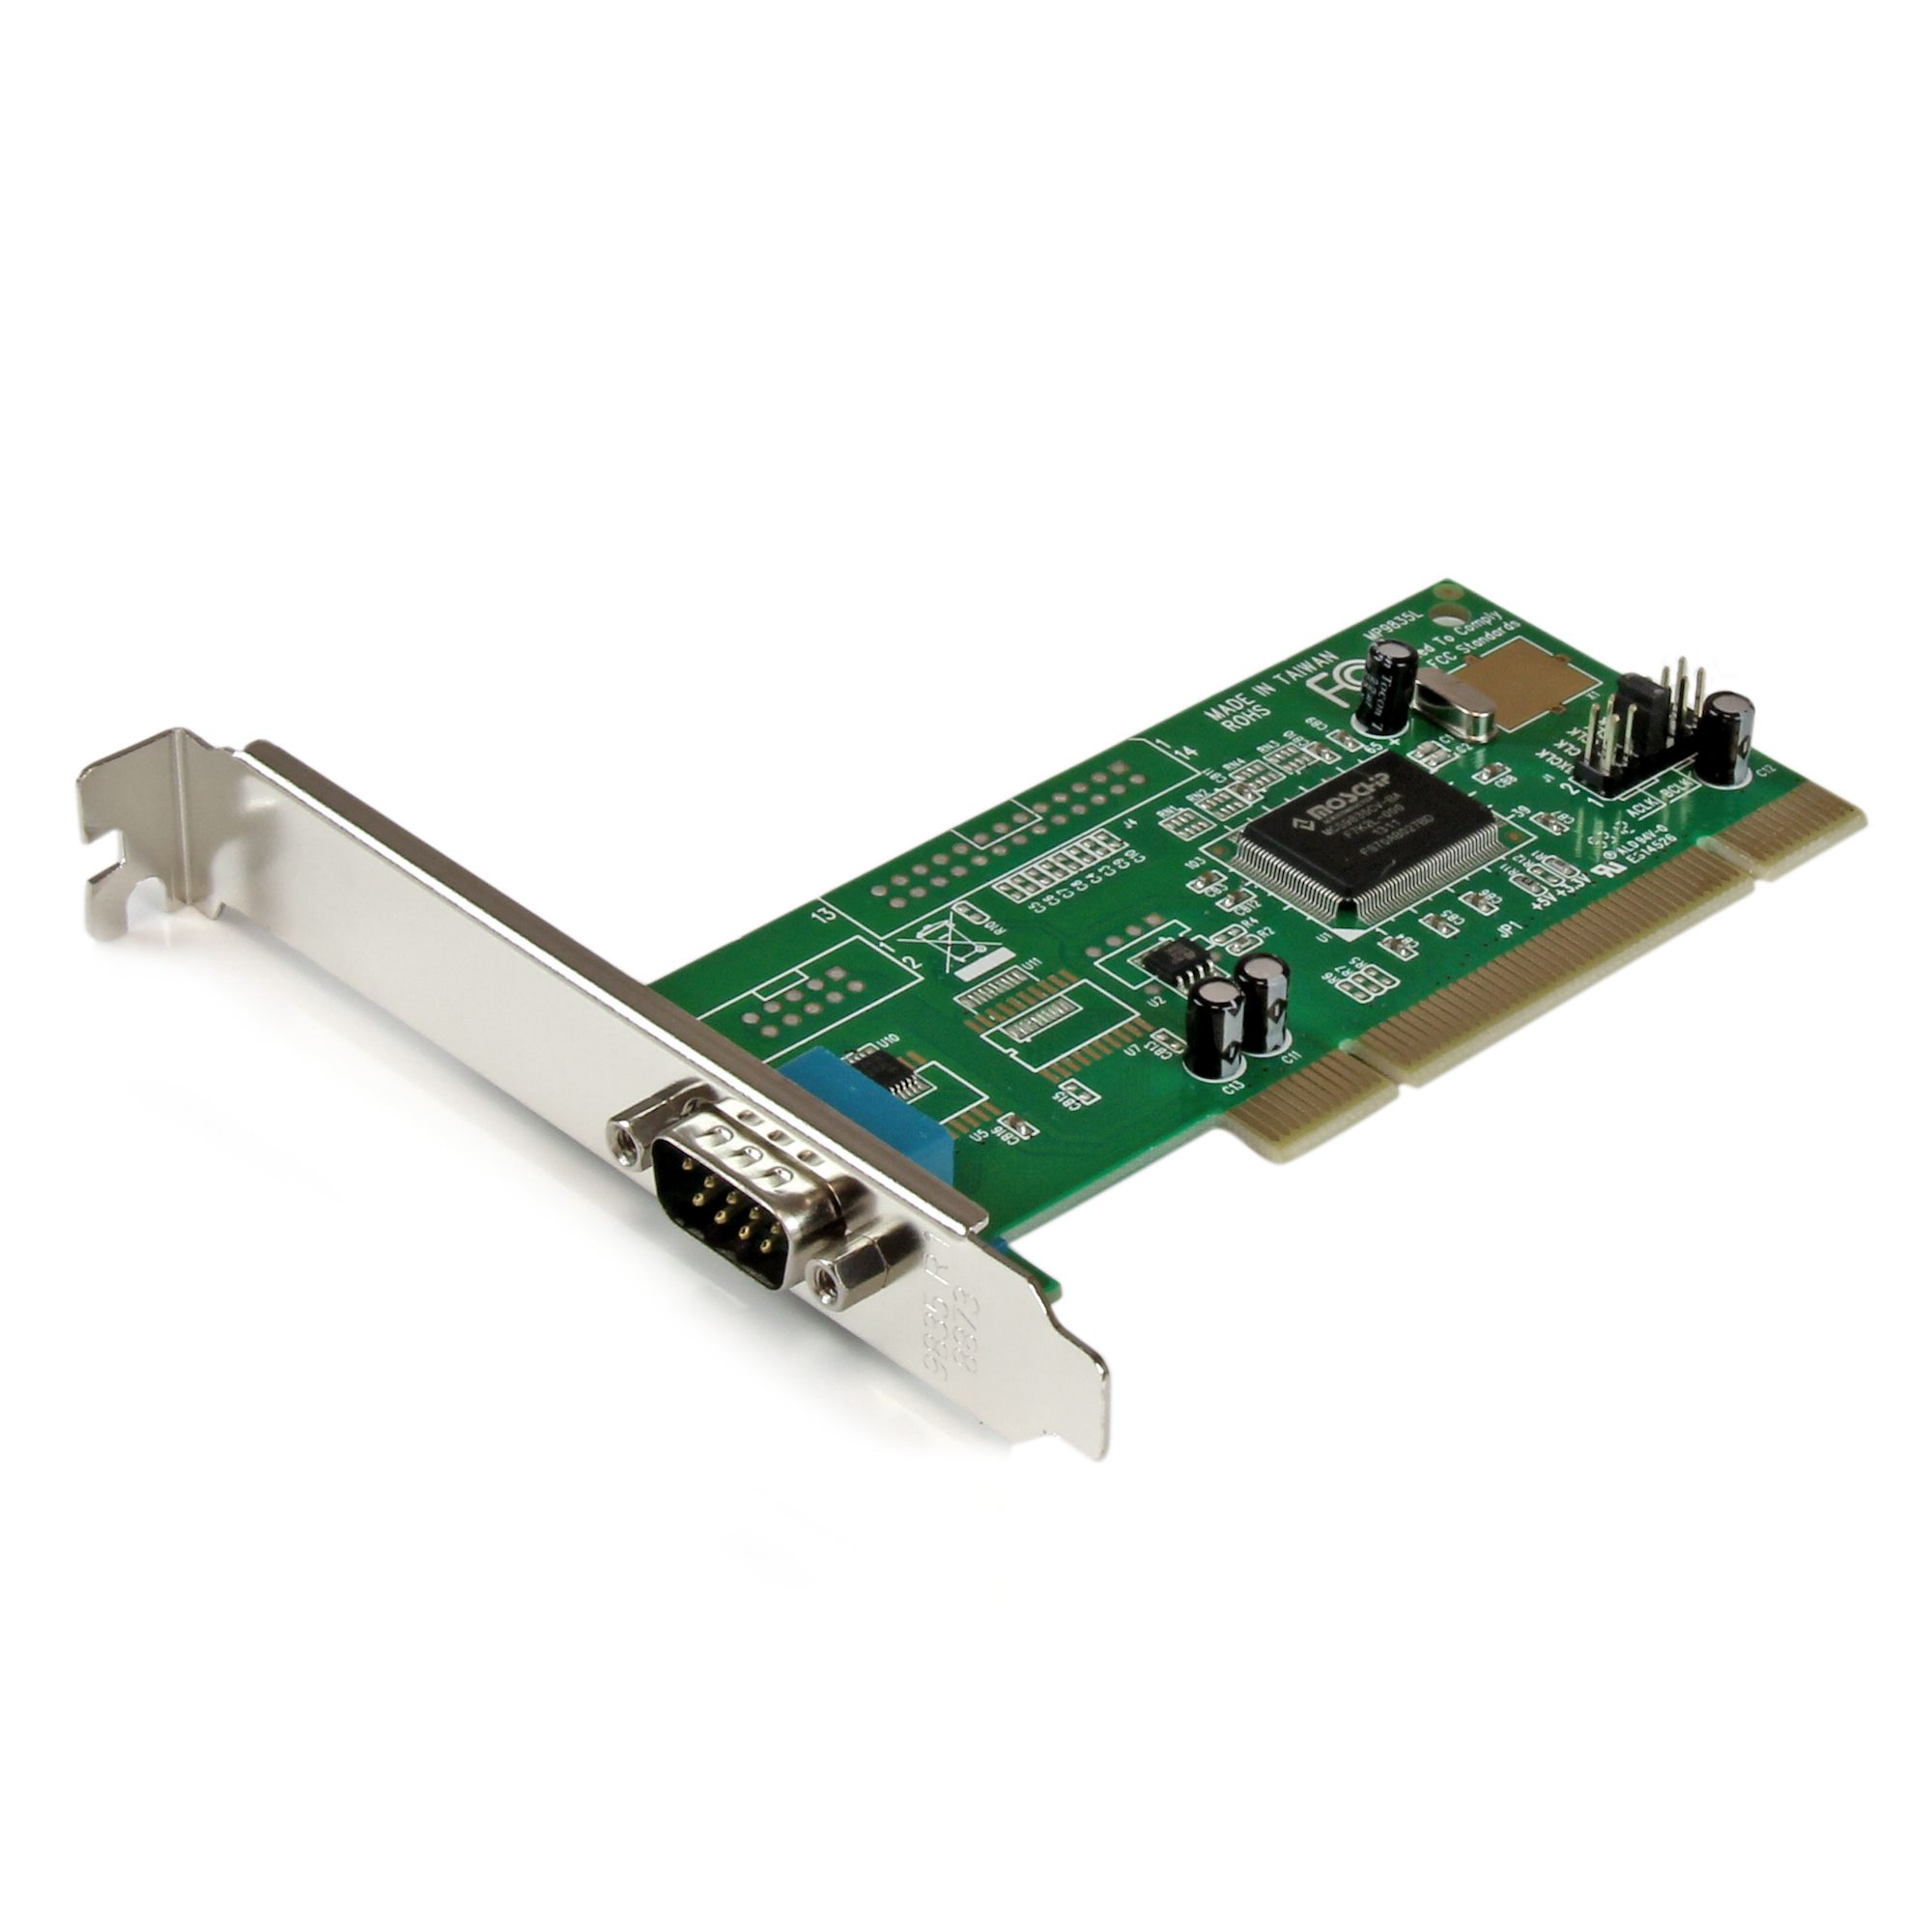 シリアル1ポート増設PCIインターフェースカード 16550 UART内蔵